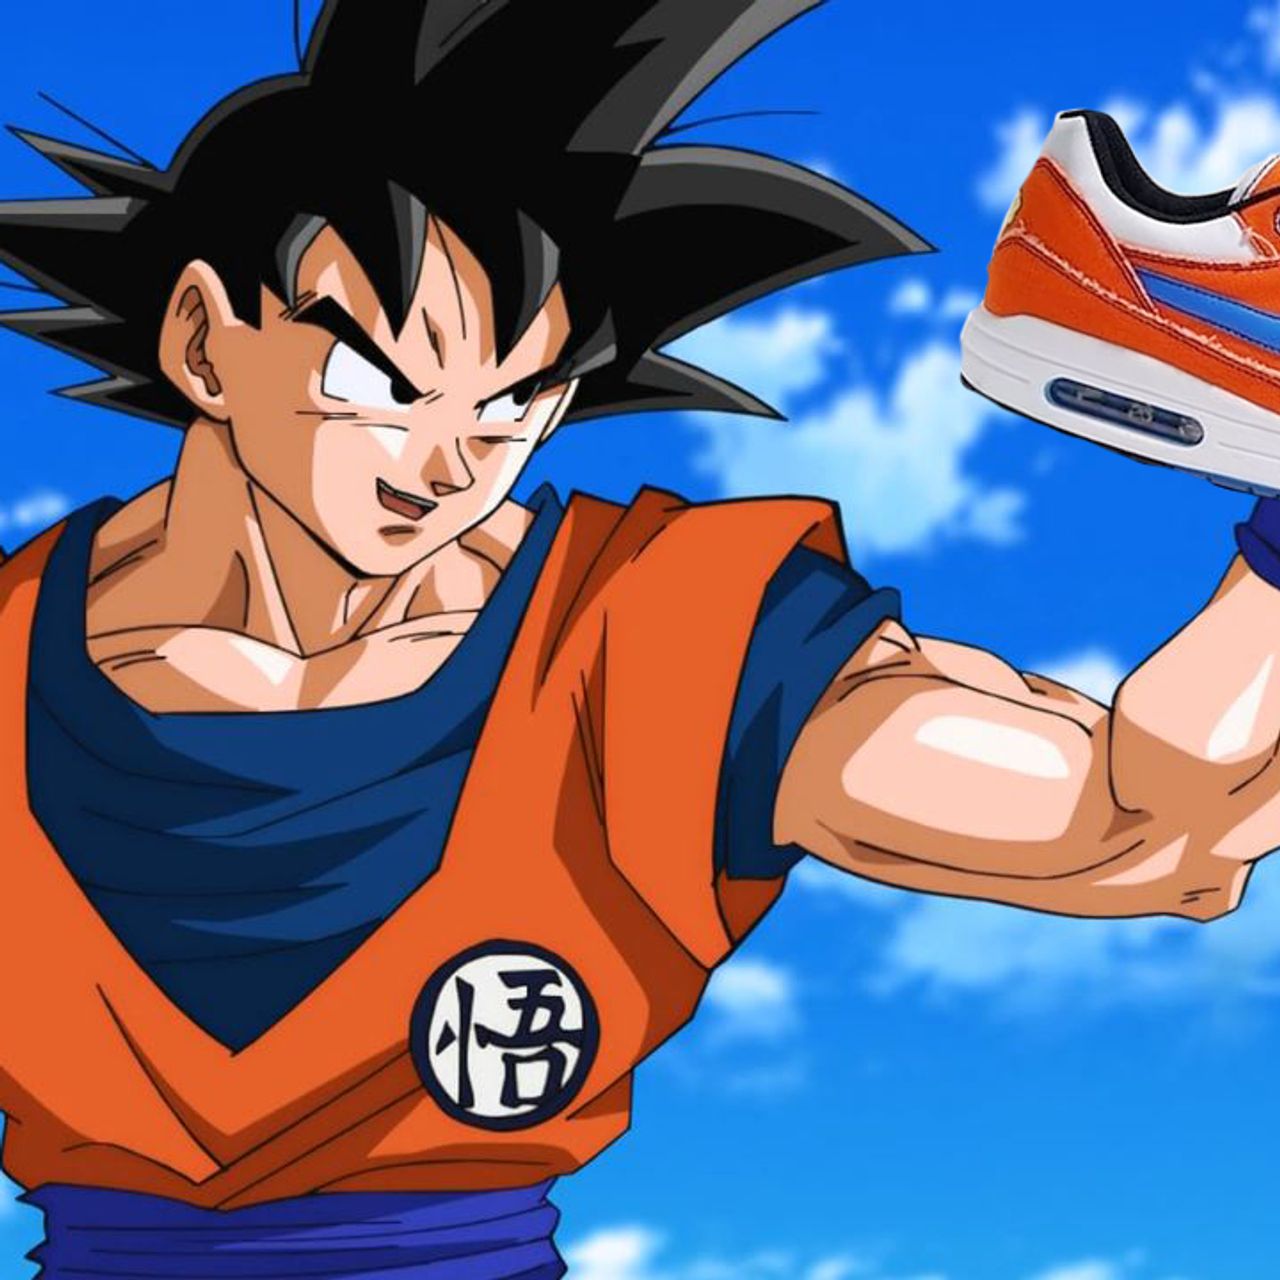 deficiencia junio espacio Check Out These 'Goku' Dragon Ball Z x Nike Air Max 1 Customs - Sneaker  Freaker